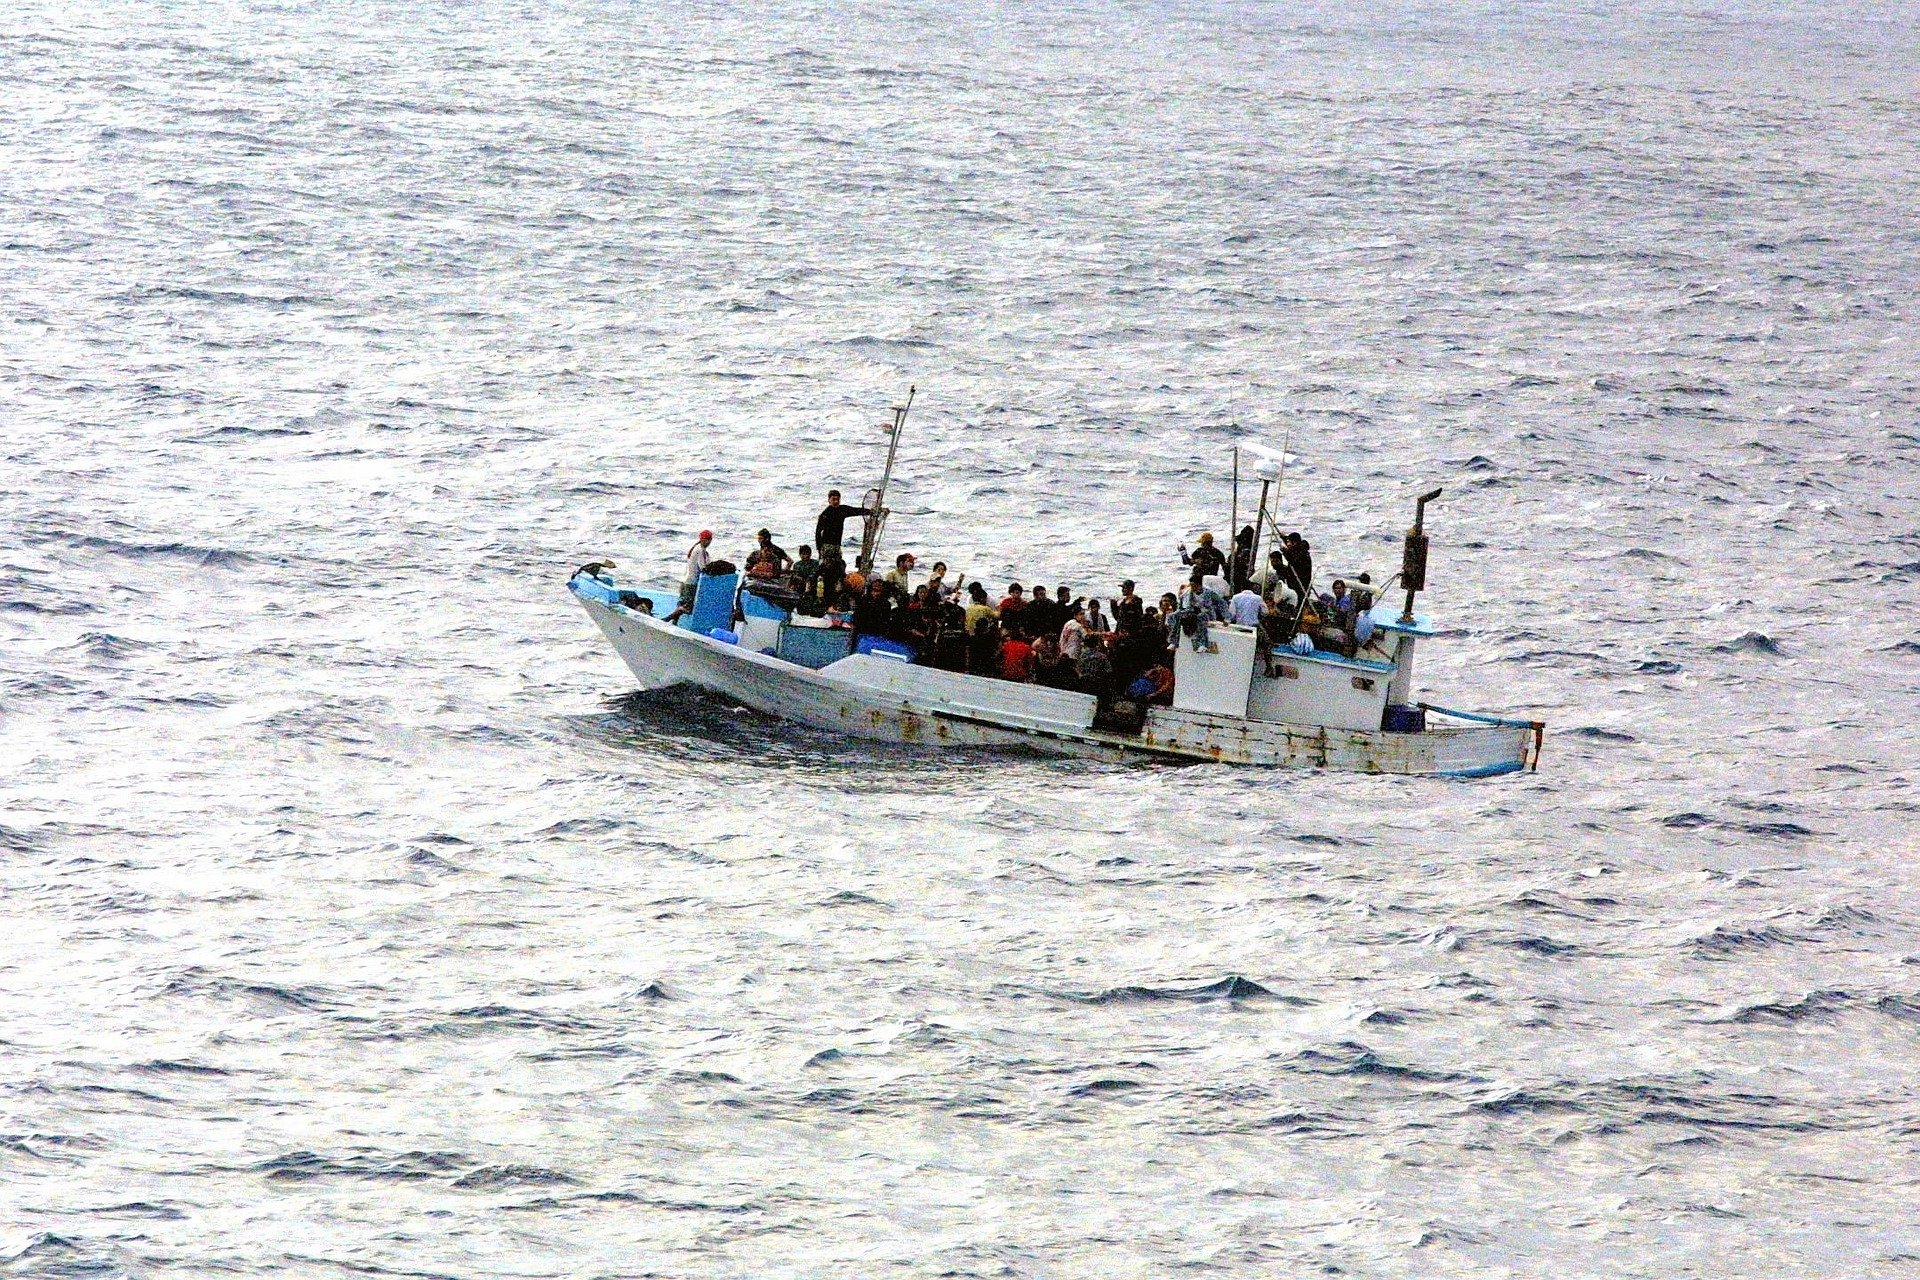 45 migrant périssent dans un naufrage au large des côtes libyennes, selon l’OIM